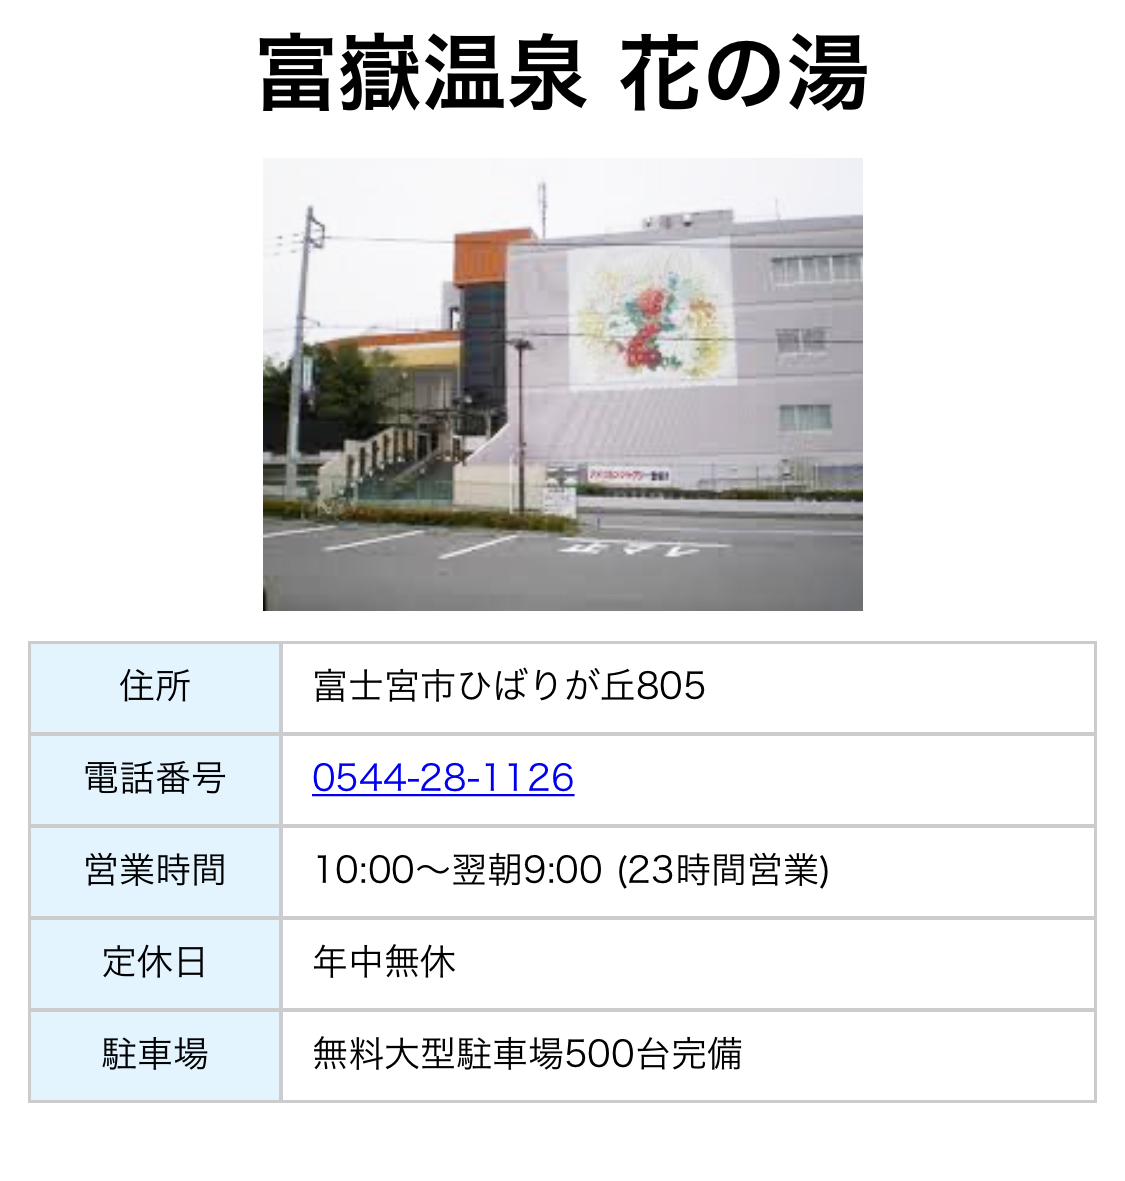 9月16日(水)より富士宮の「時之栖花の湯」様での取り扱いが始まりました。